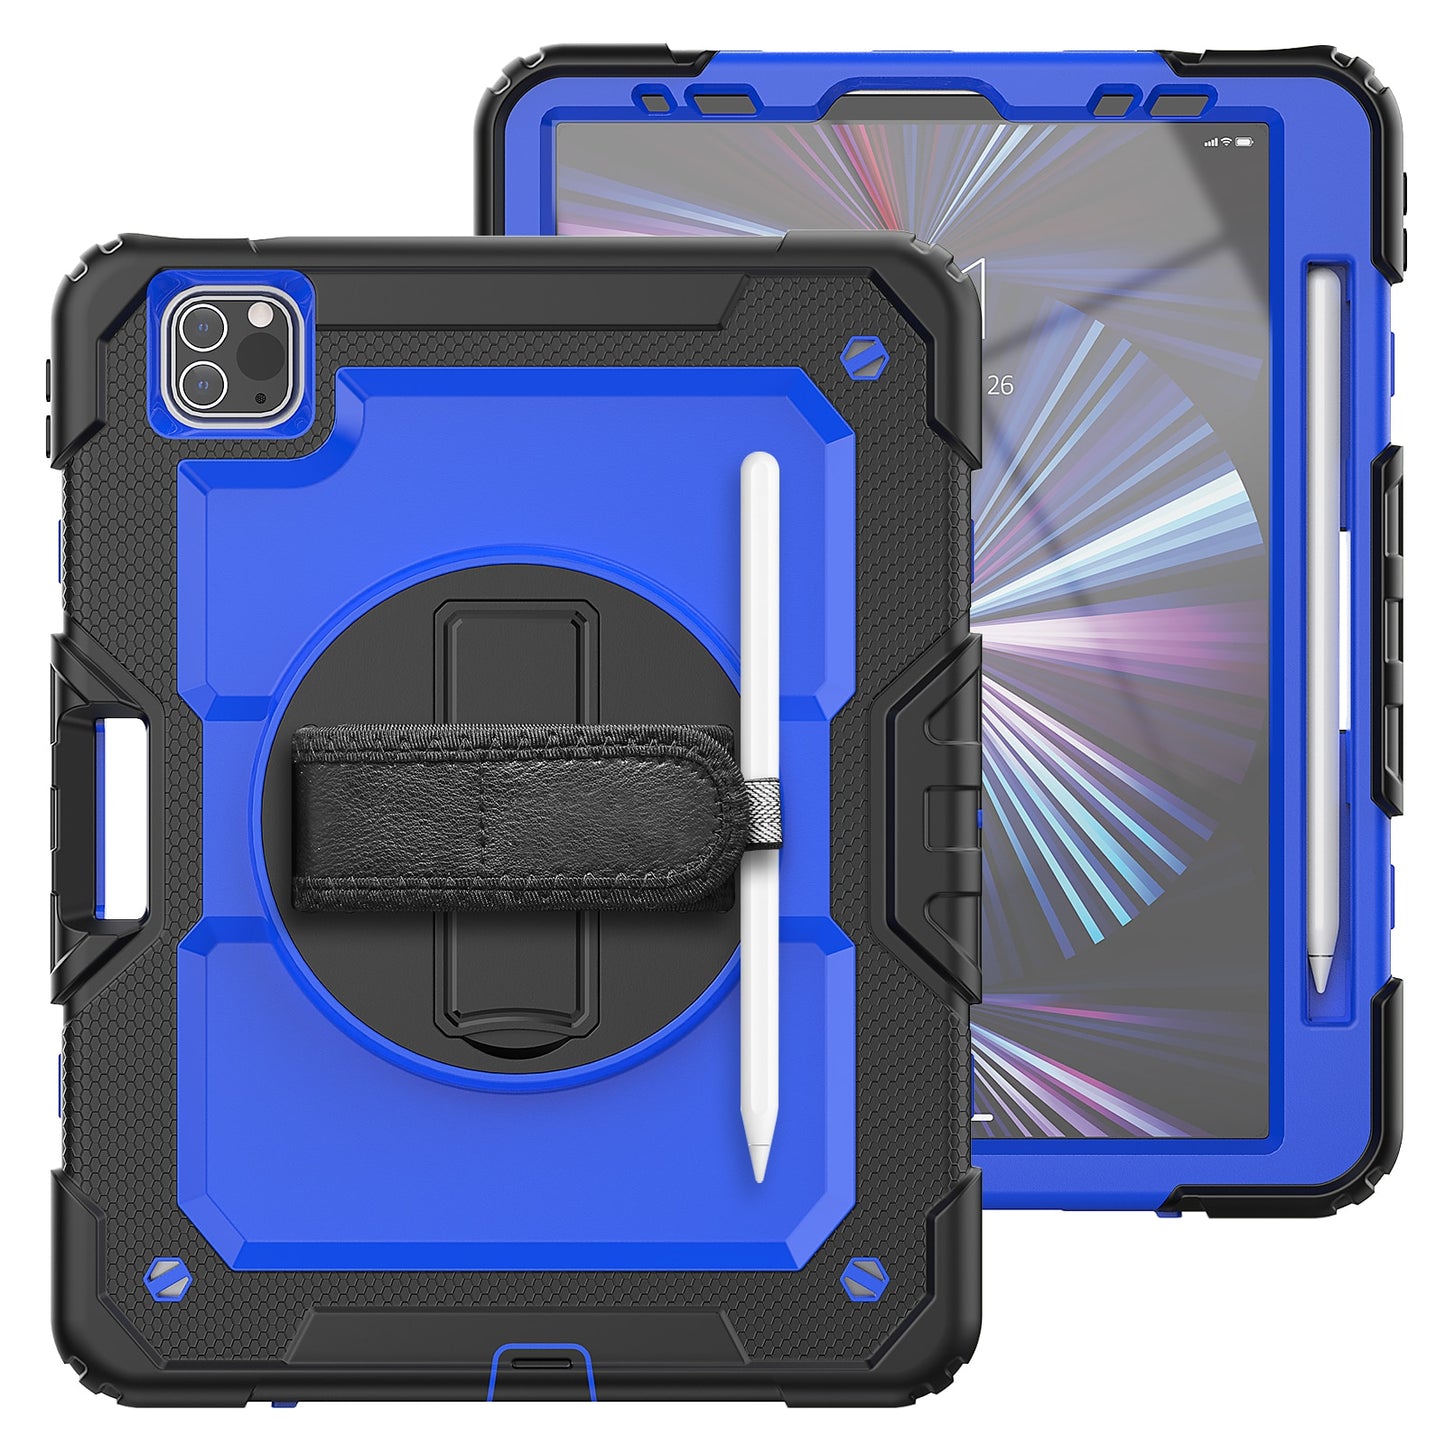 Smart Cover iPad Case Heavy Duty Full Body Protective